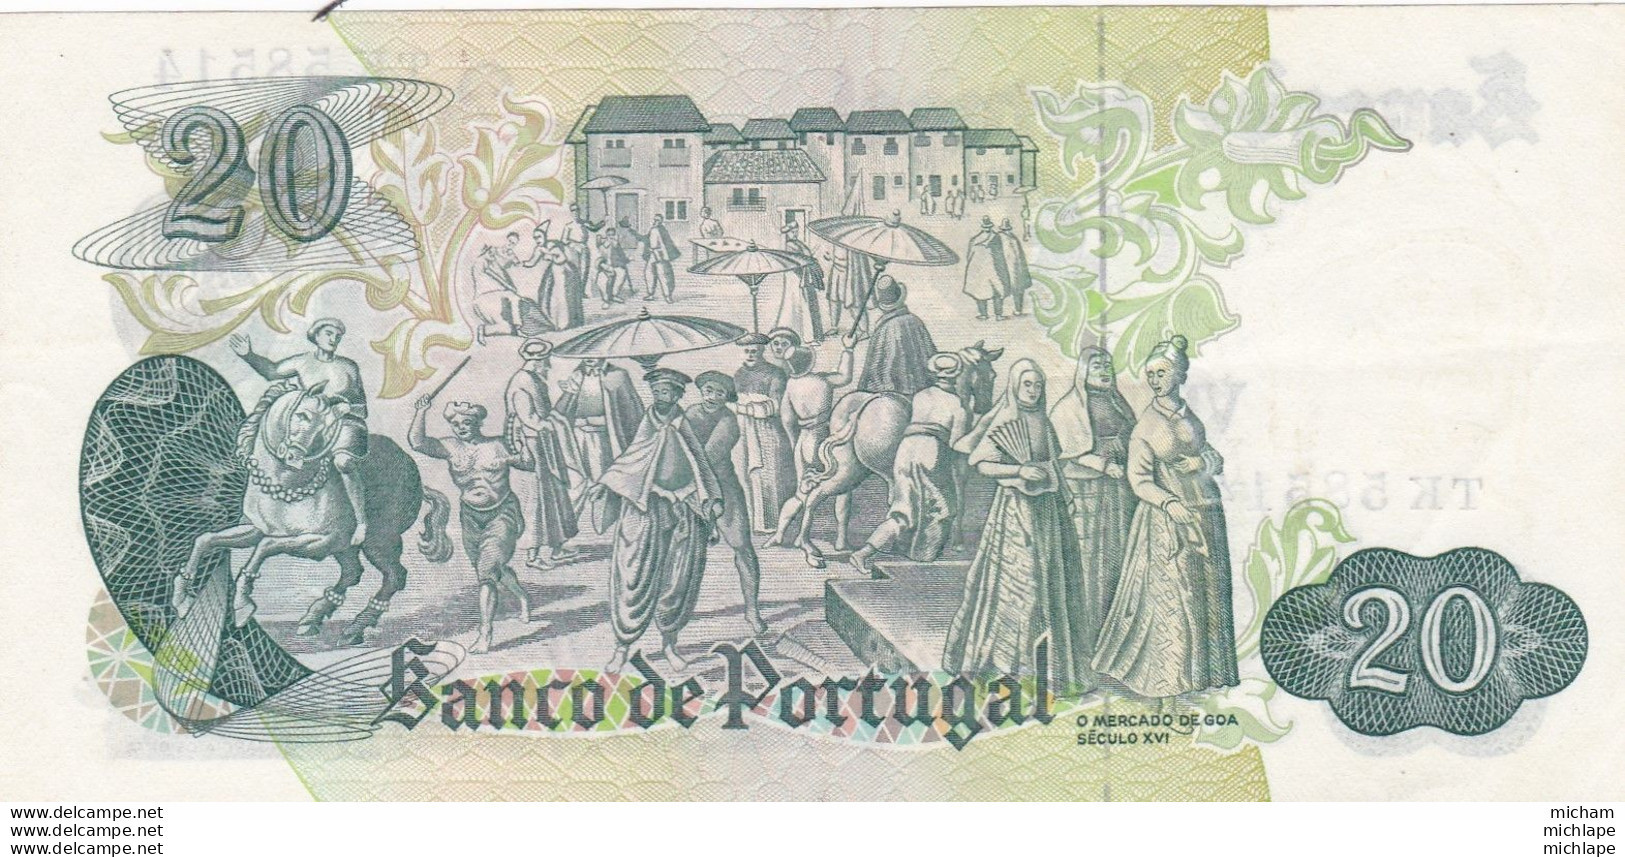 Billet  De  20 Escudos  Portugal  - T K 1971  - Ch 8  Tres Bon Etat - Portugal